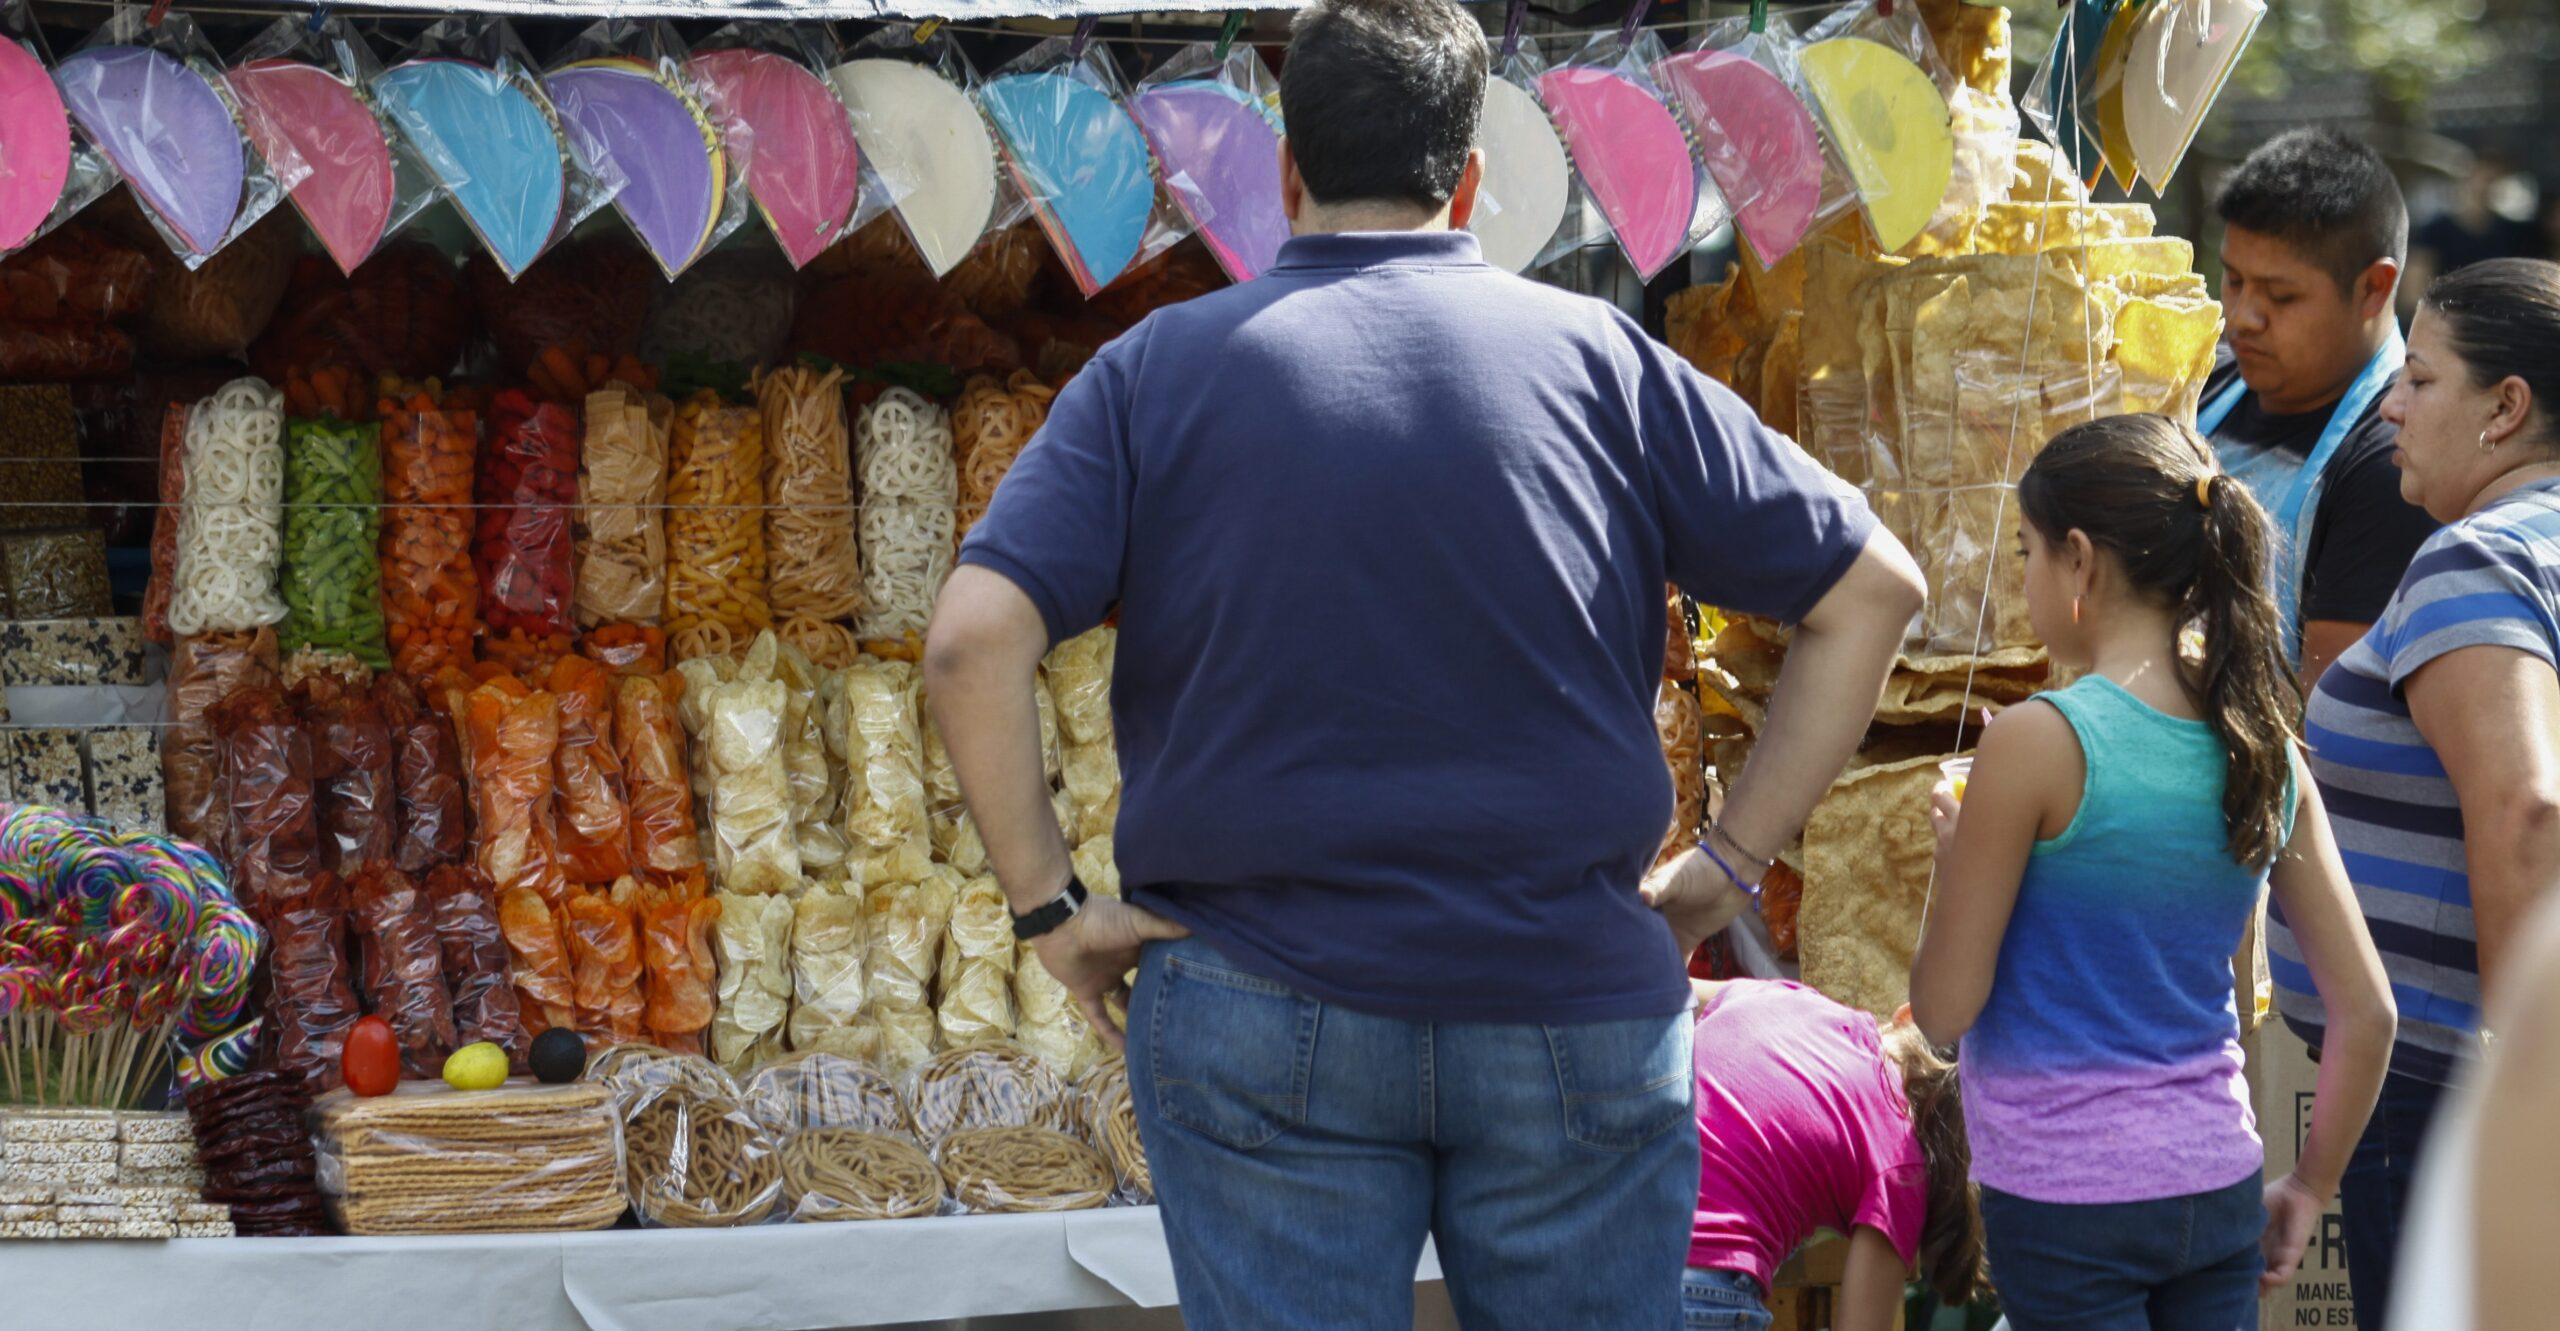 “Es una epidemia”: Obesidad en México pasó de 71.3 a 75.2% entre 2012 y 2018, según encuesta del INEGI